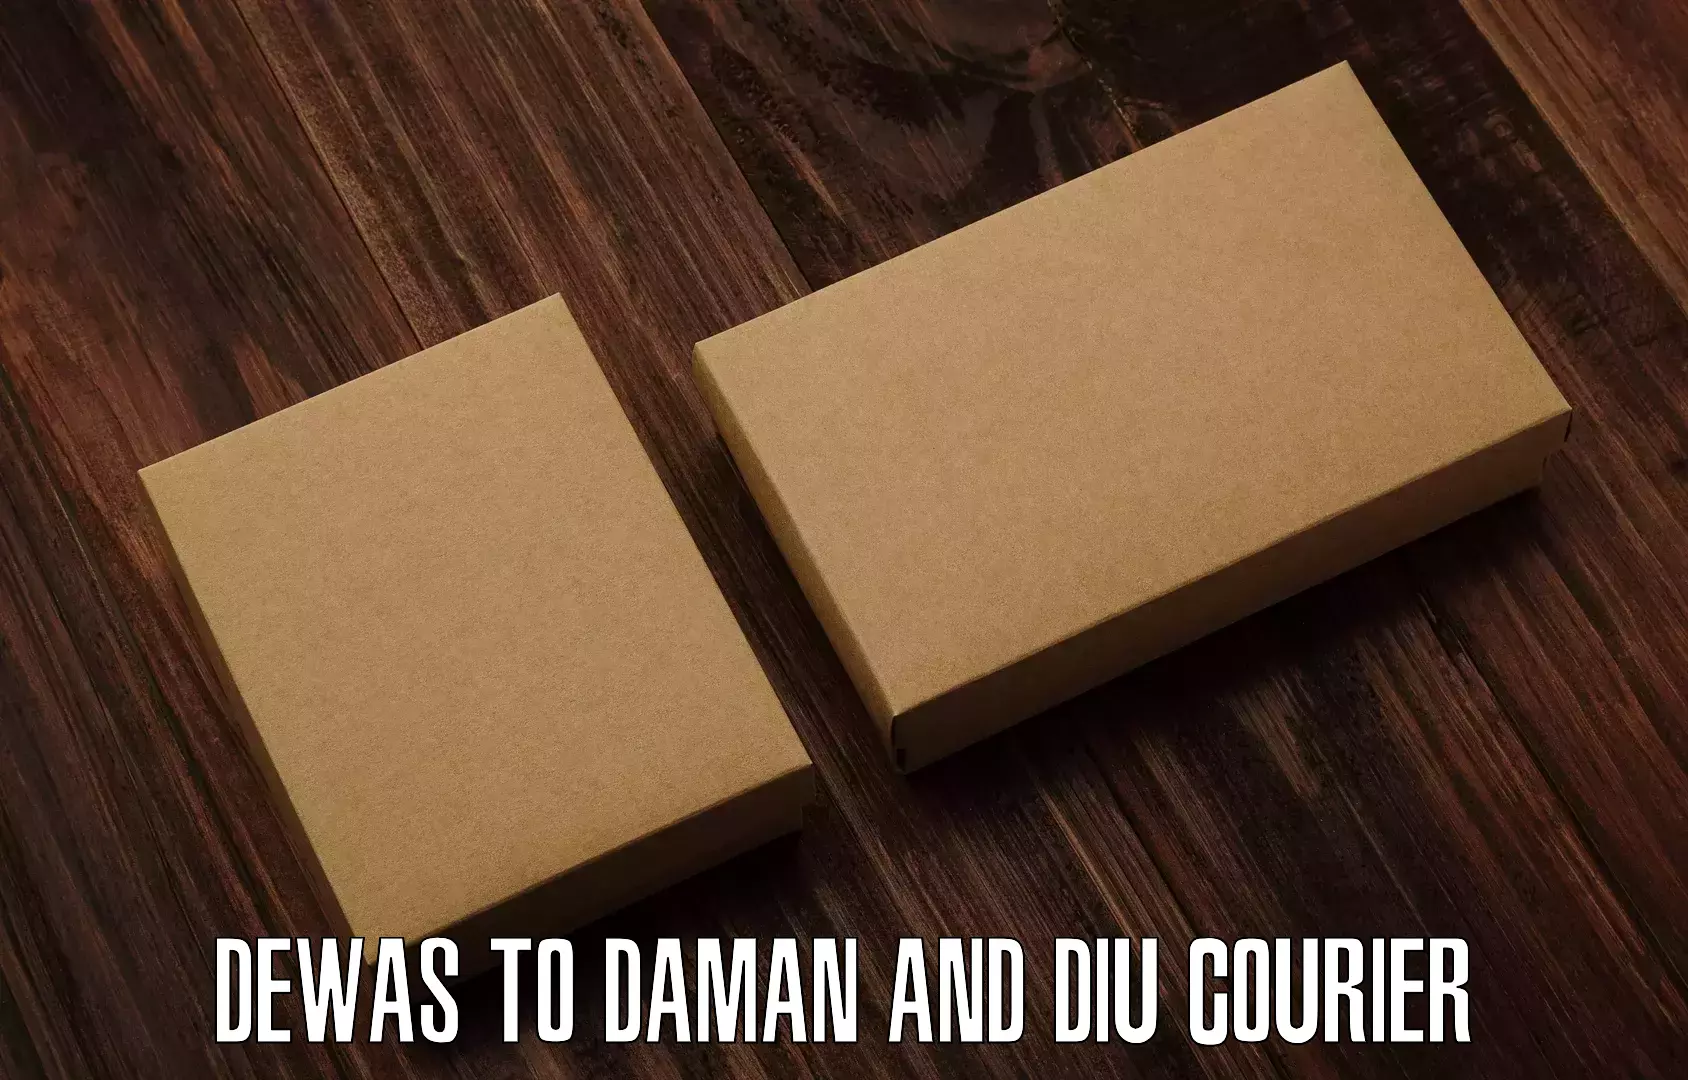 Customer-oriented courier services Dewas to Daman